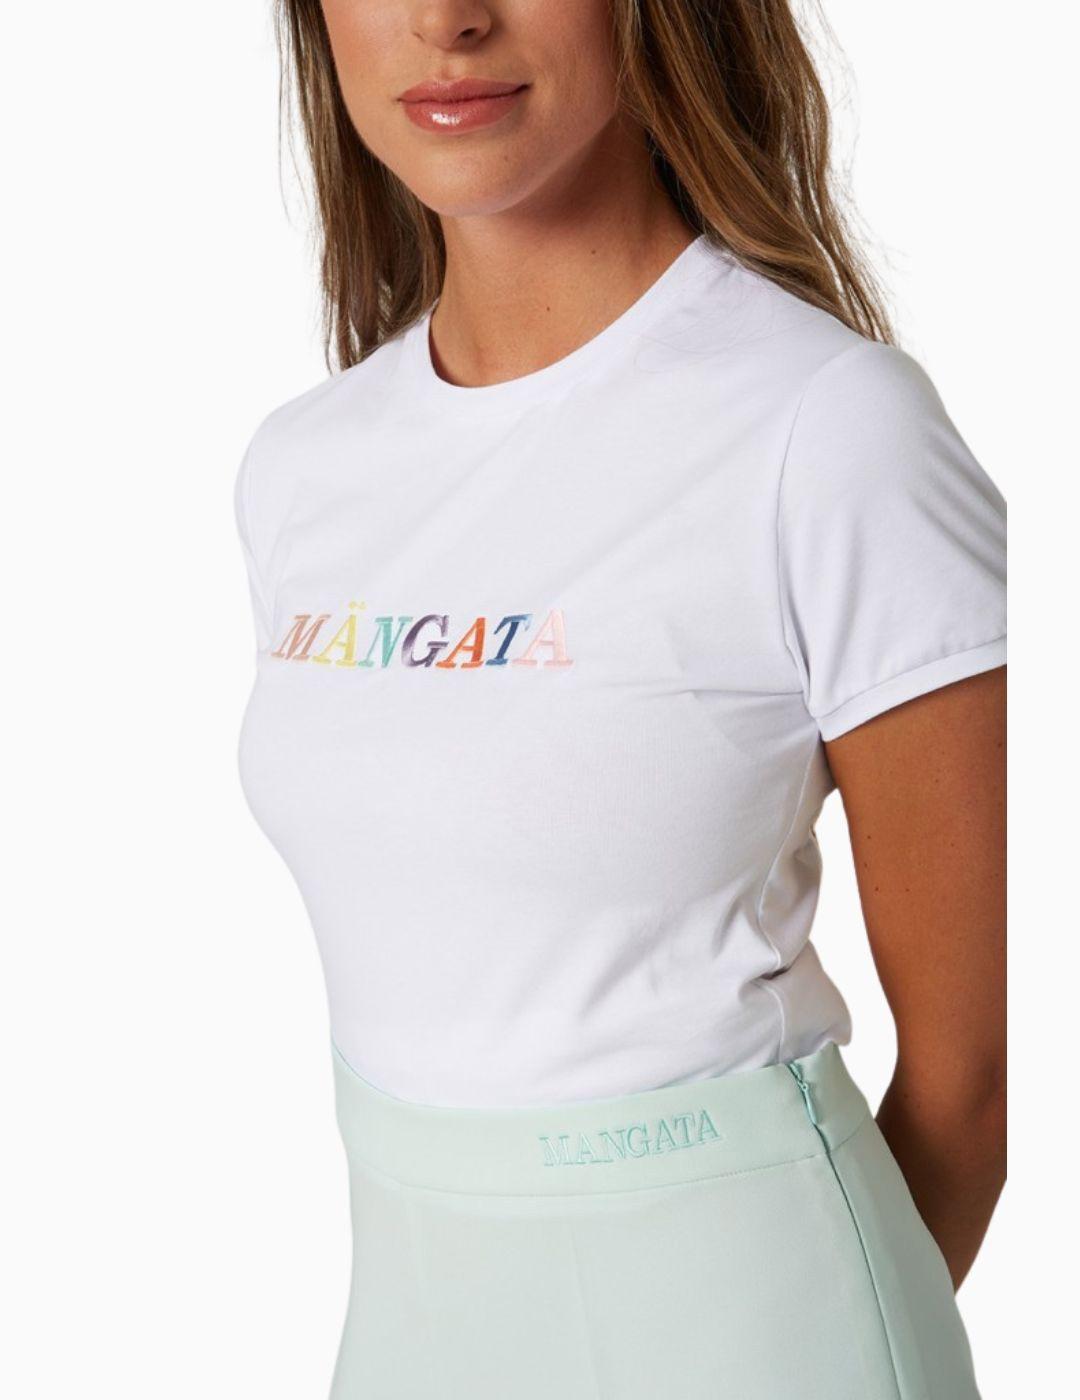 Camiseta MANGATA Básica Multicolor